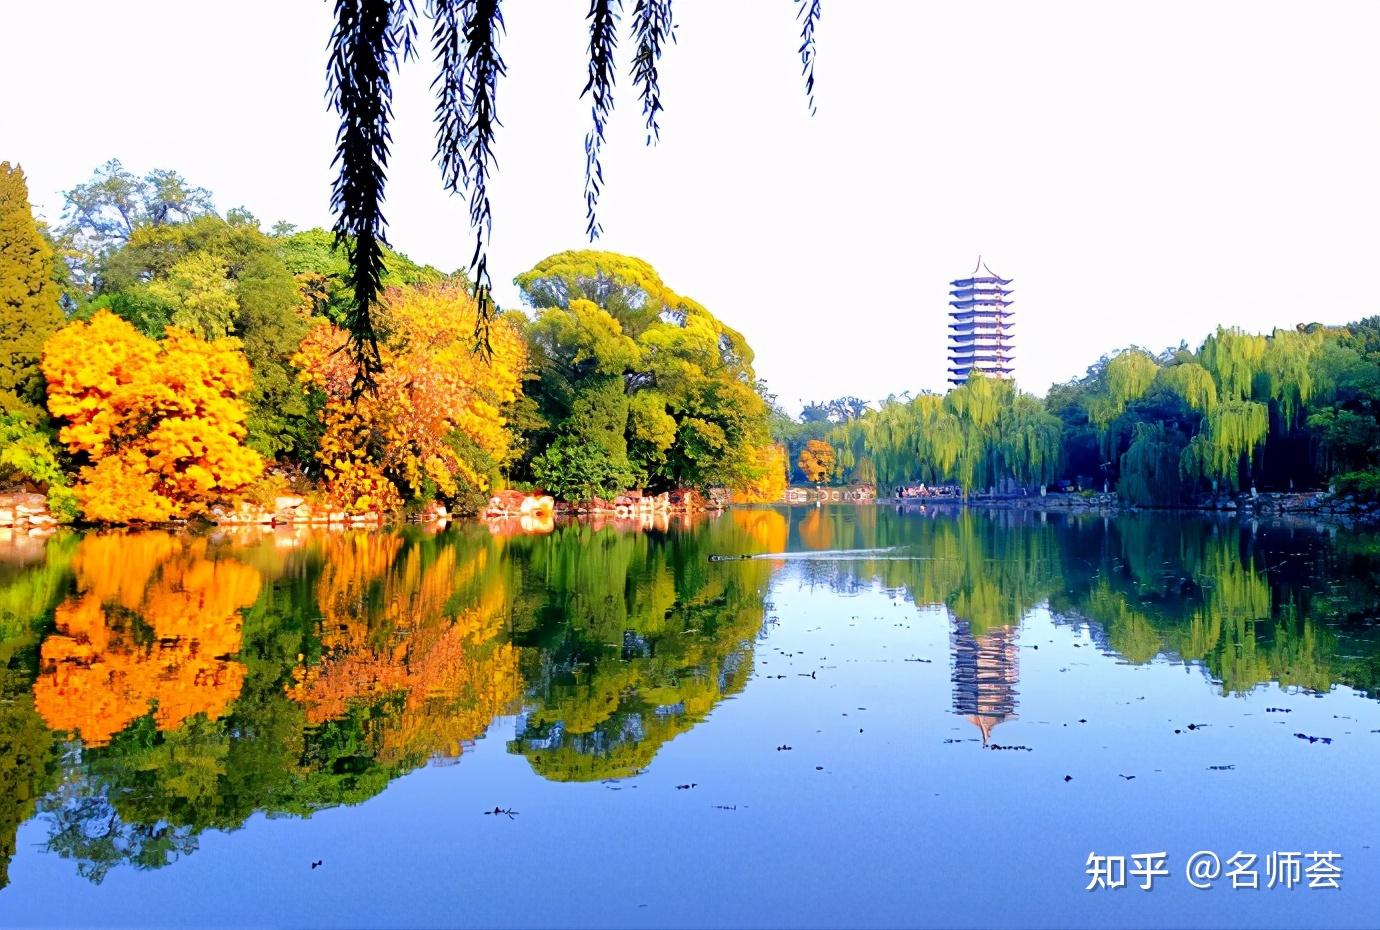 2,校园环境北京大学所流露出的不仅是它在历史长河中沉淀的人文气息之